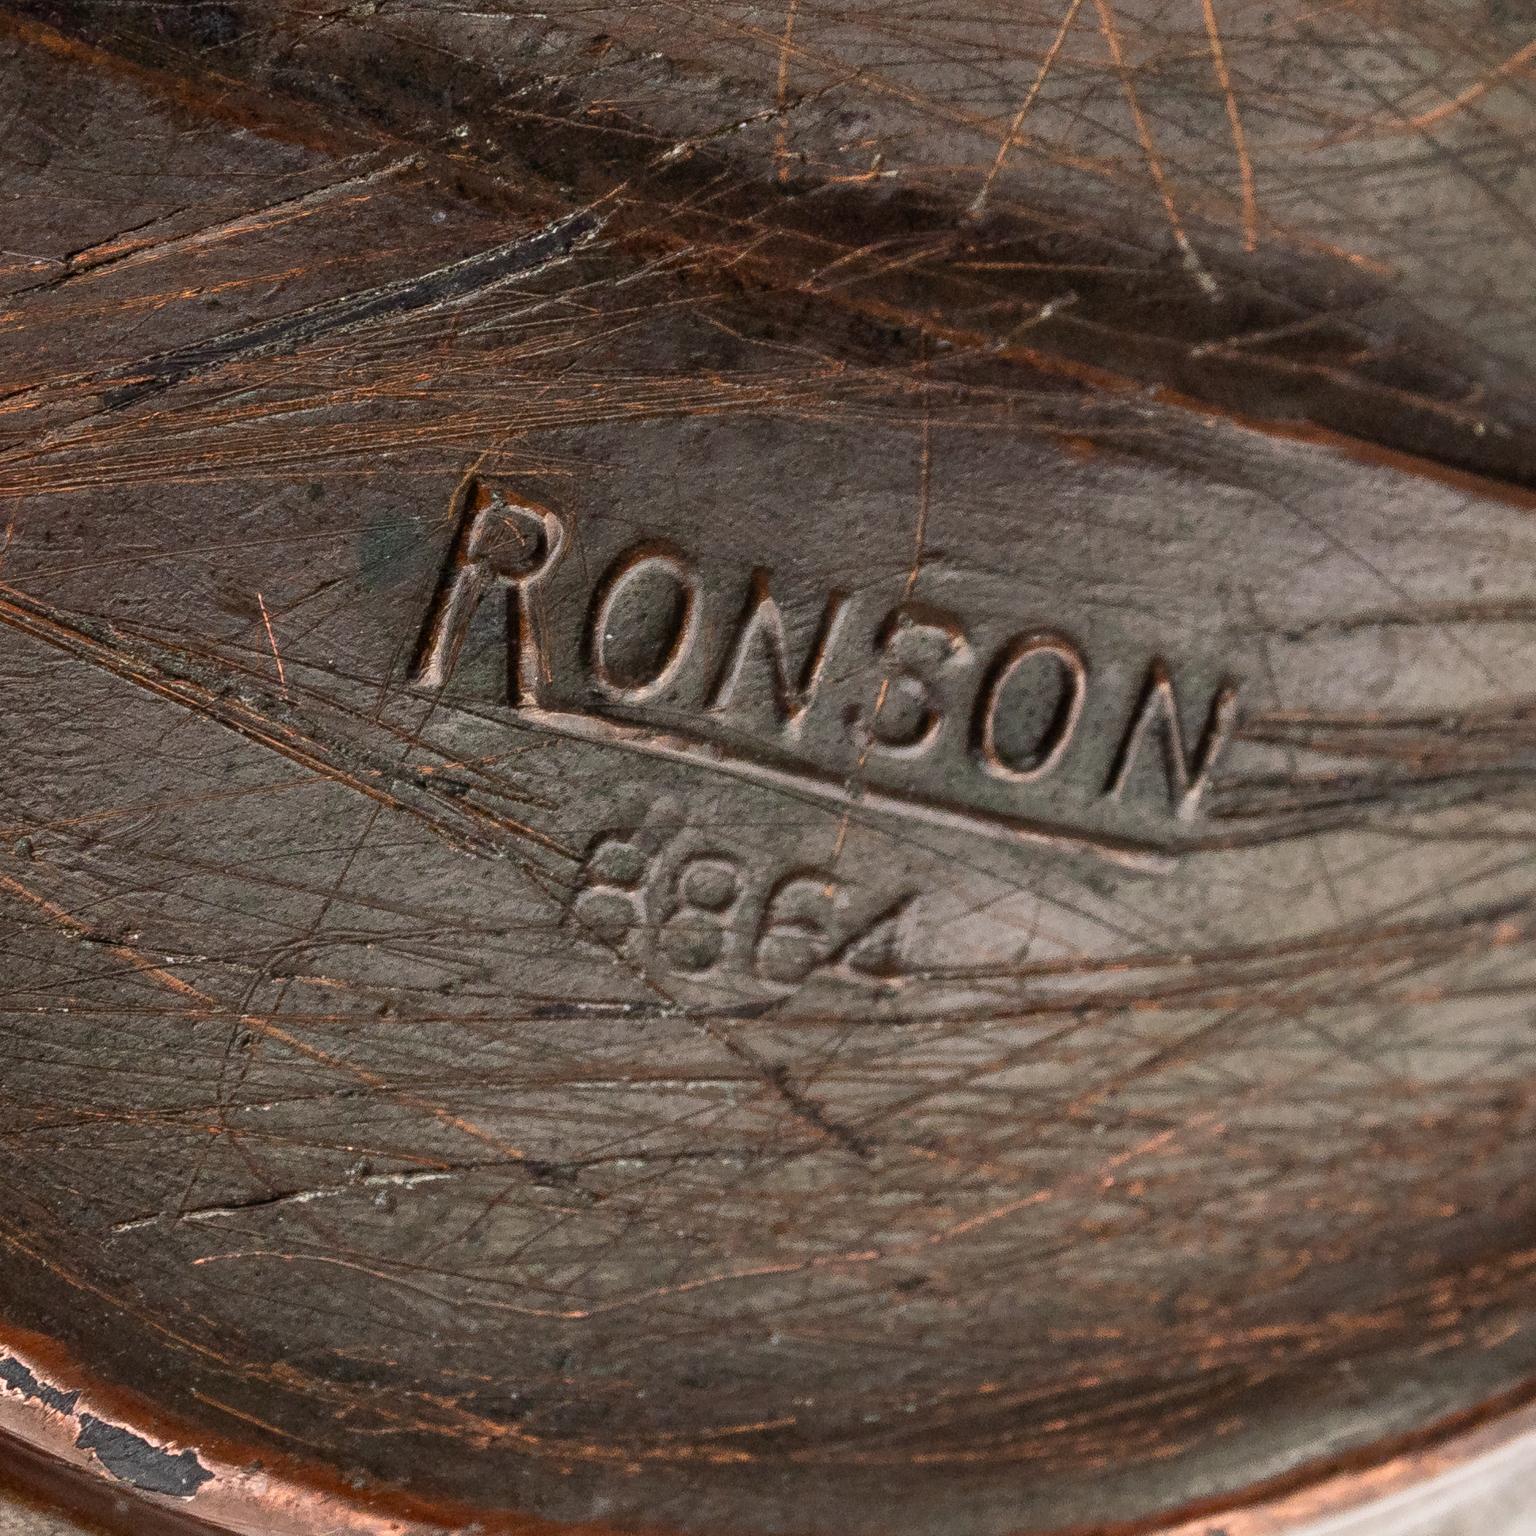 ronson ashtray